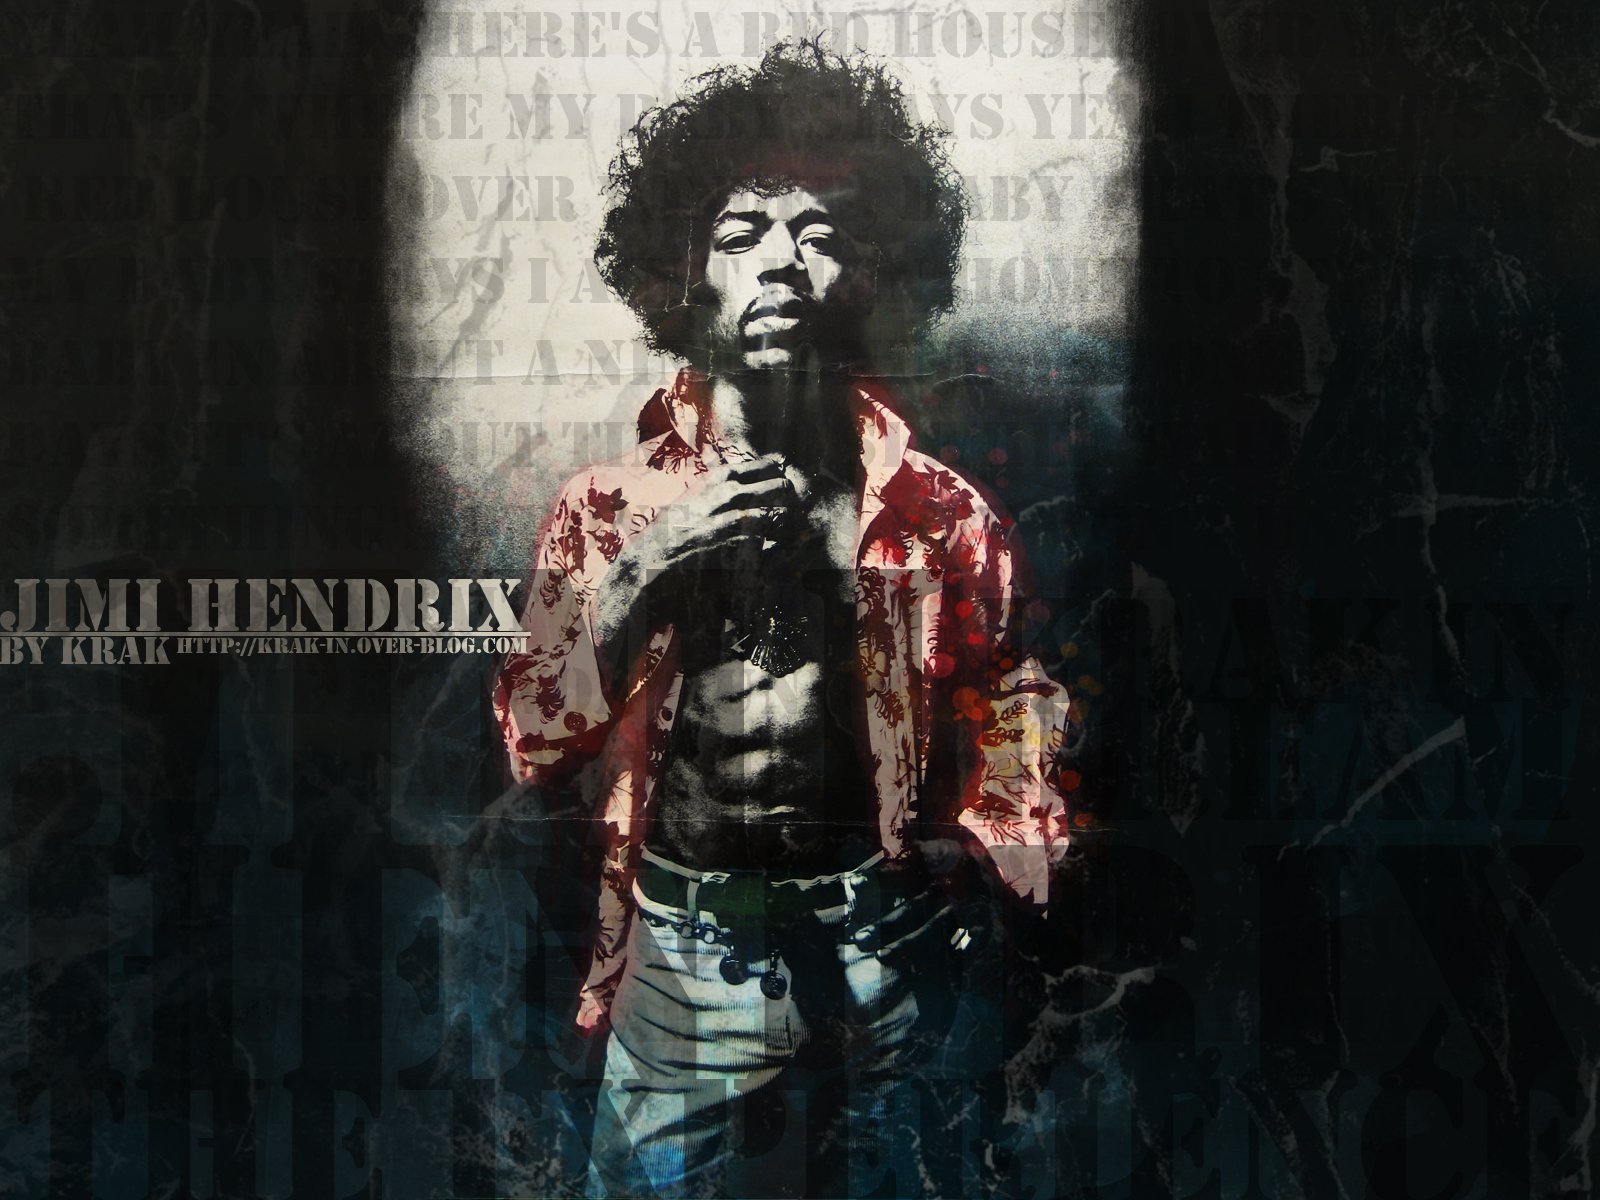 Jimi Hendrix Puter Wallpaper Desktop Background